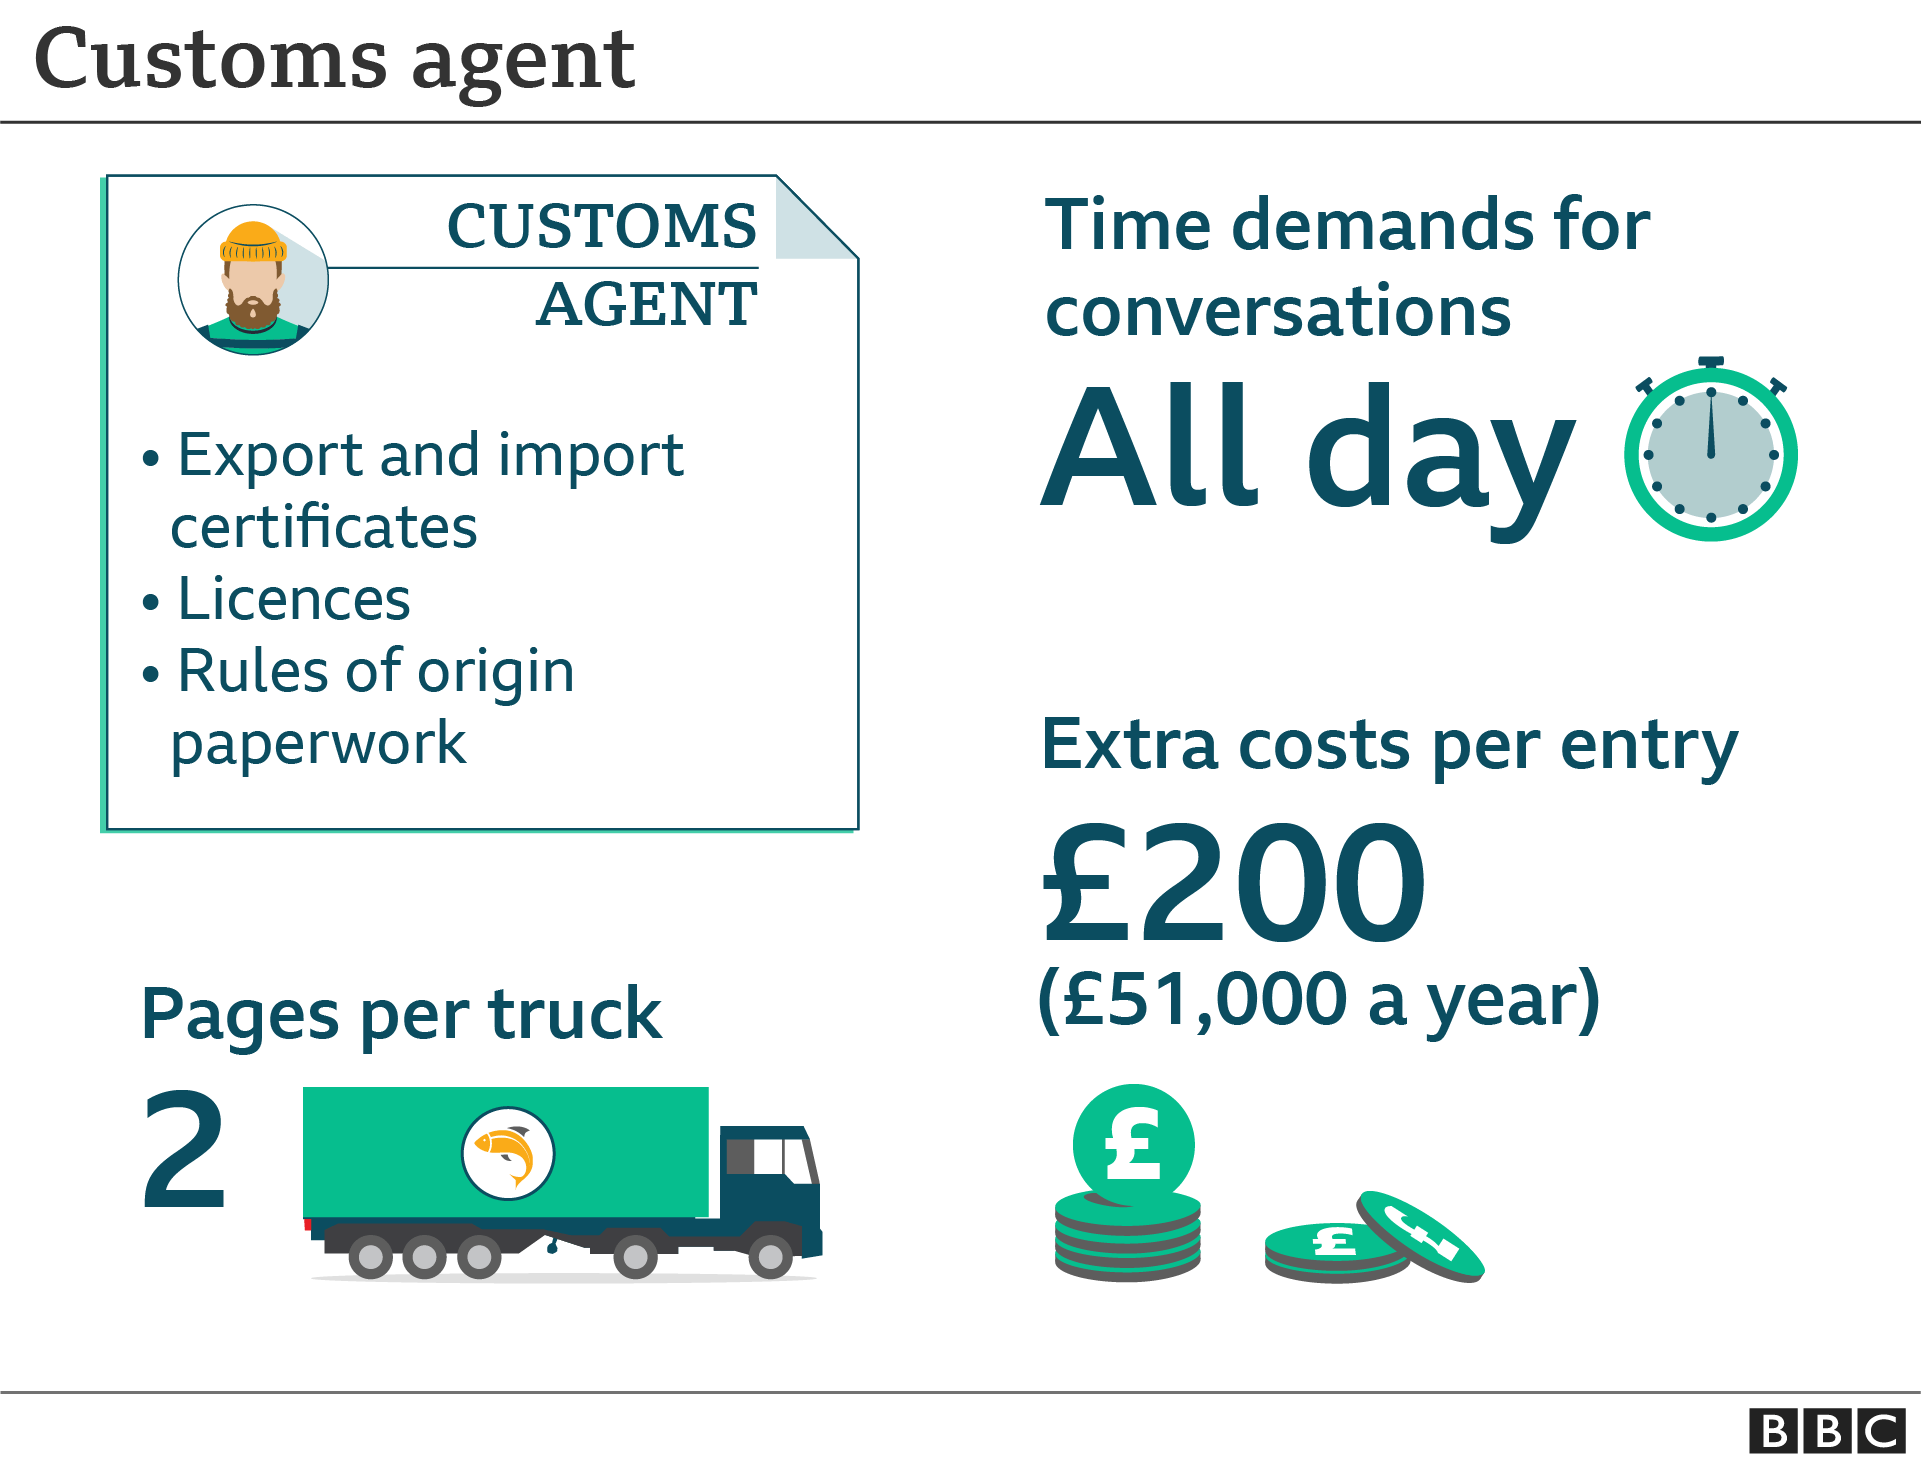 Customs agent graphic